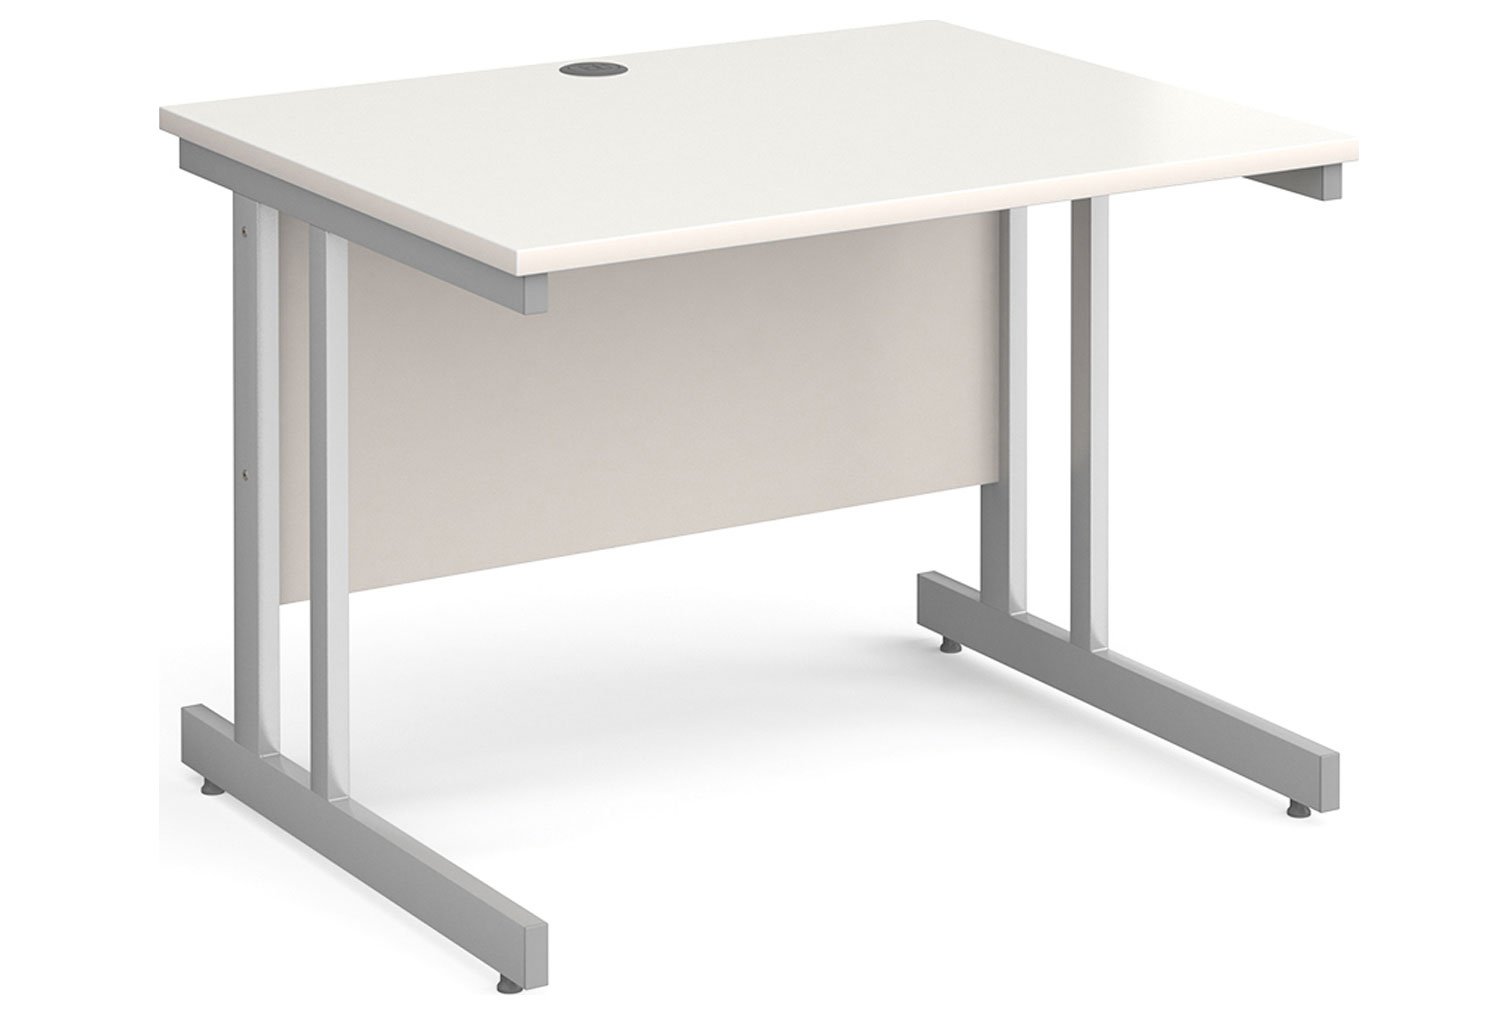 Tully II Rectangular Office Desk, 100wx80dx73h (cm), White